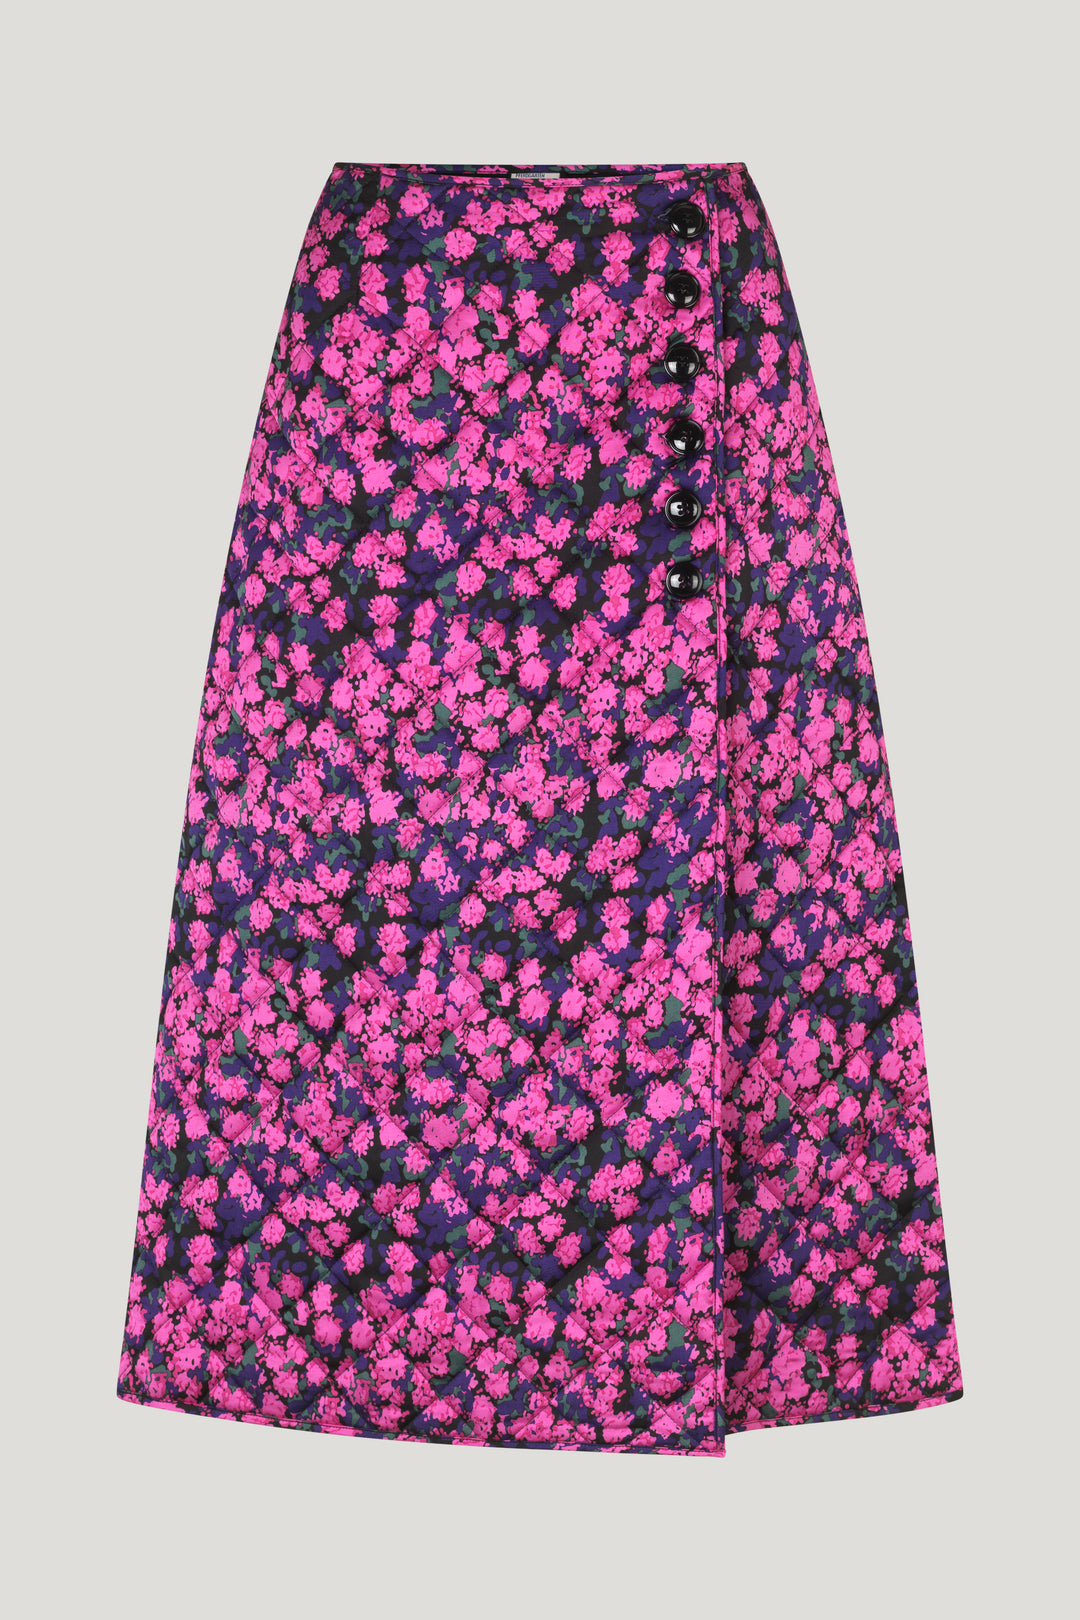 Sania Big Pink Flower Splash Skirt